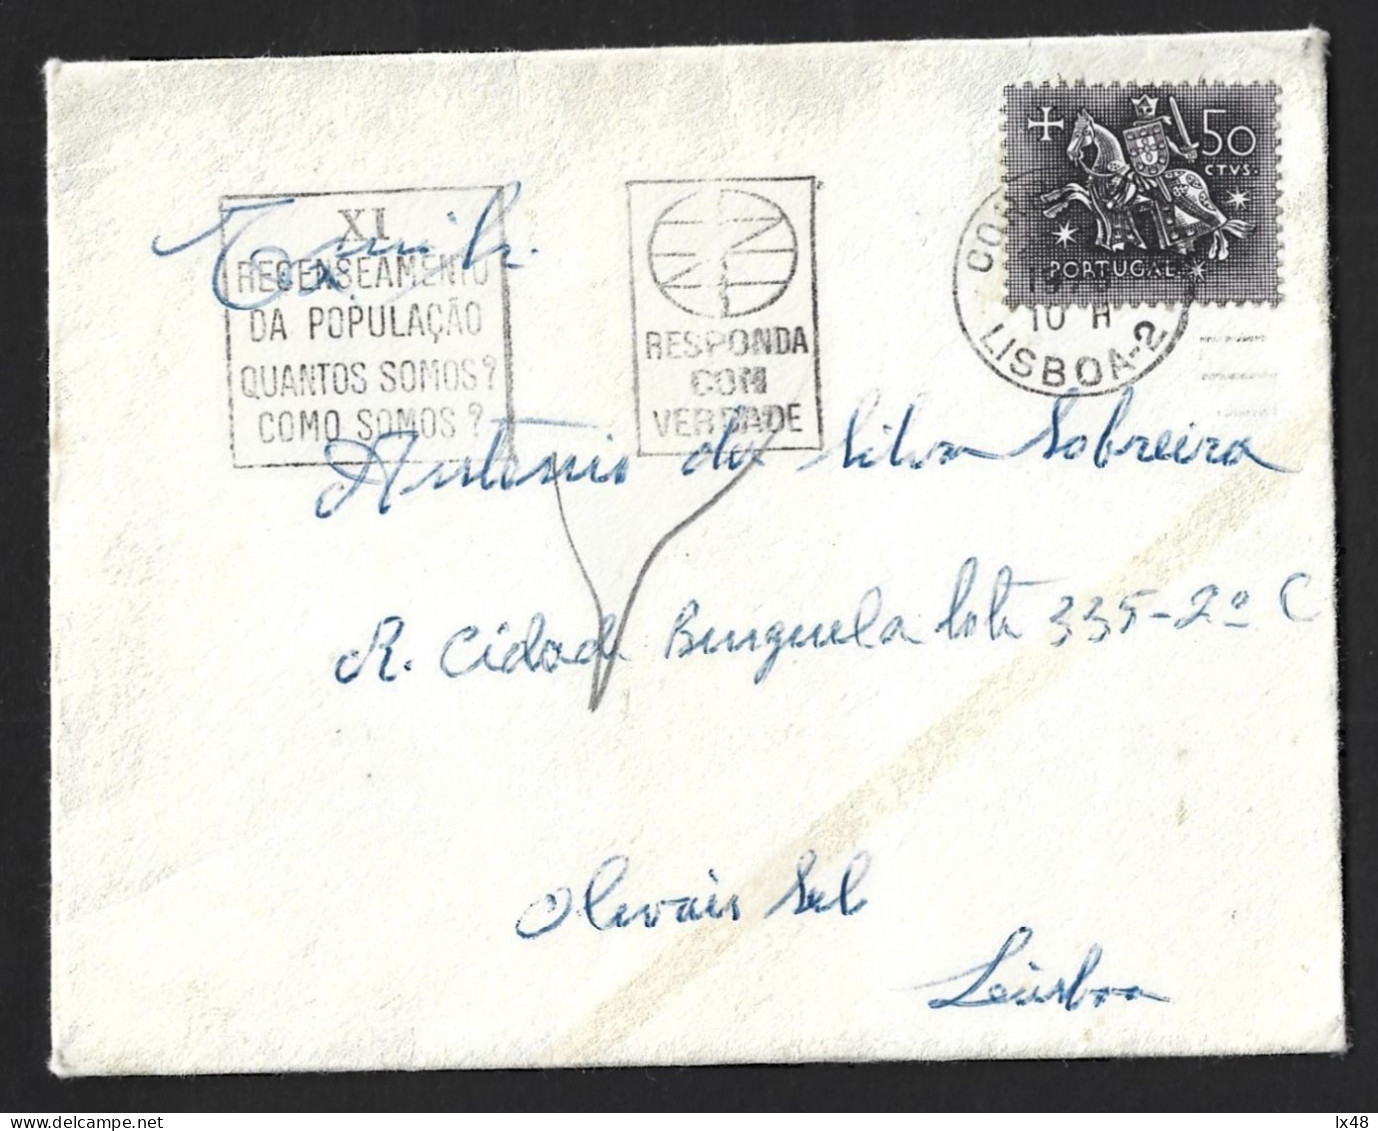 Último Recenseamento Eleitoral De Salazar 1970. Flâmula IX Recenseamento Do Estado Novo, Portugal. Salazar's Last Electo - Lettres & Documents